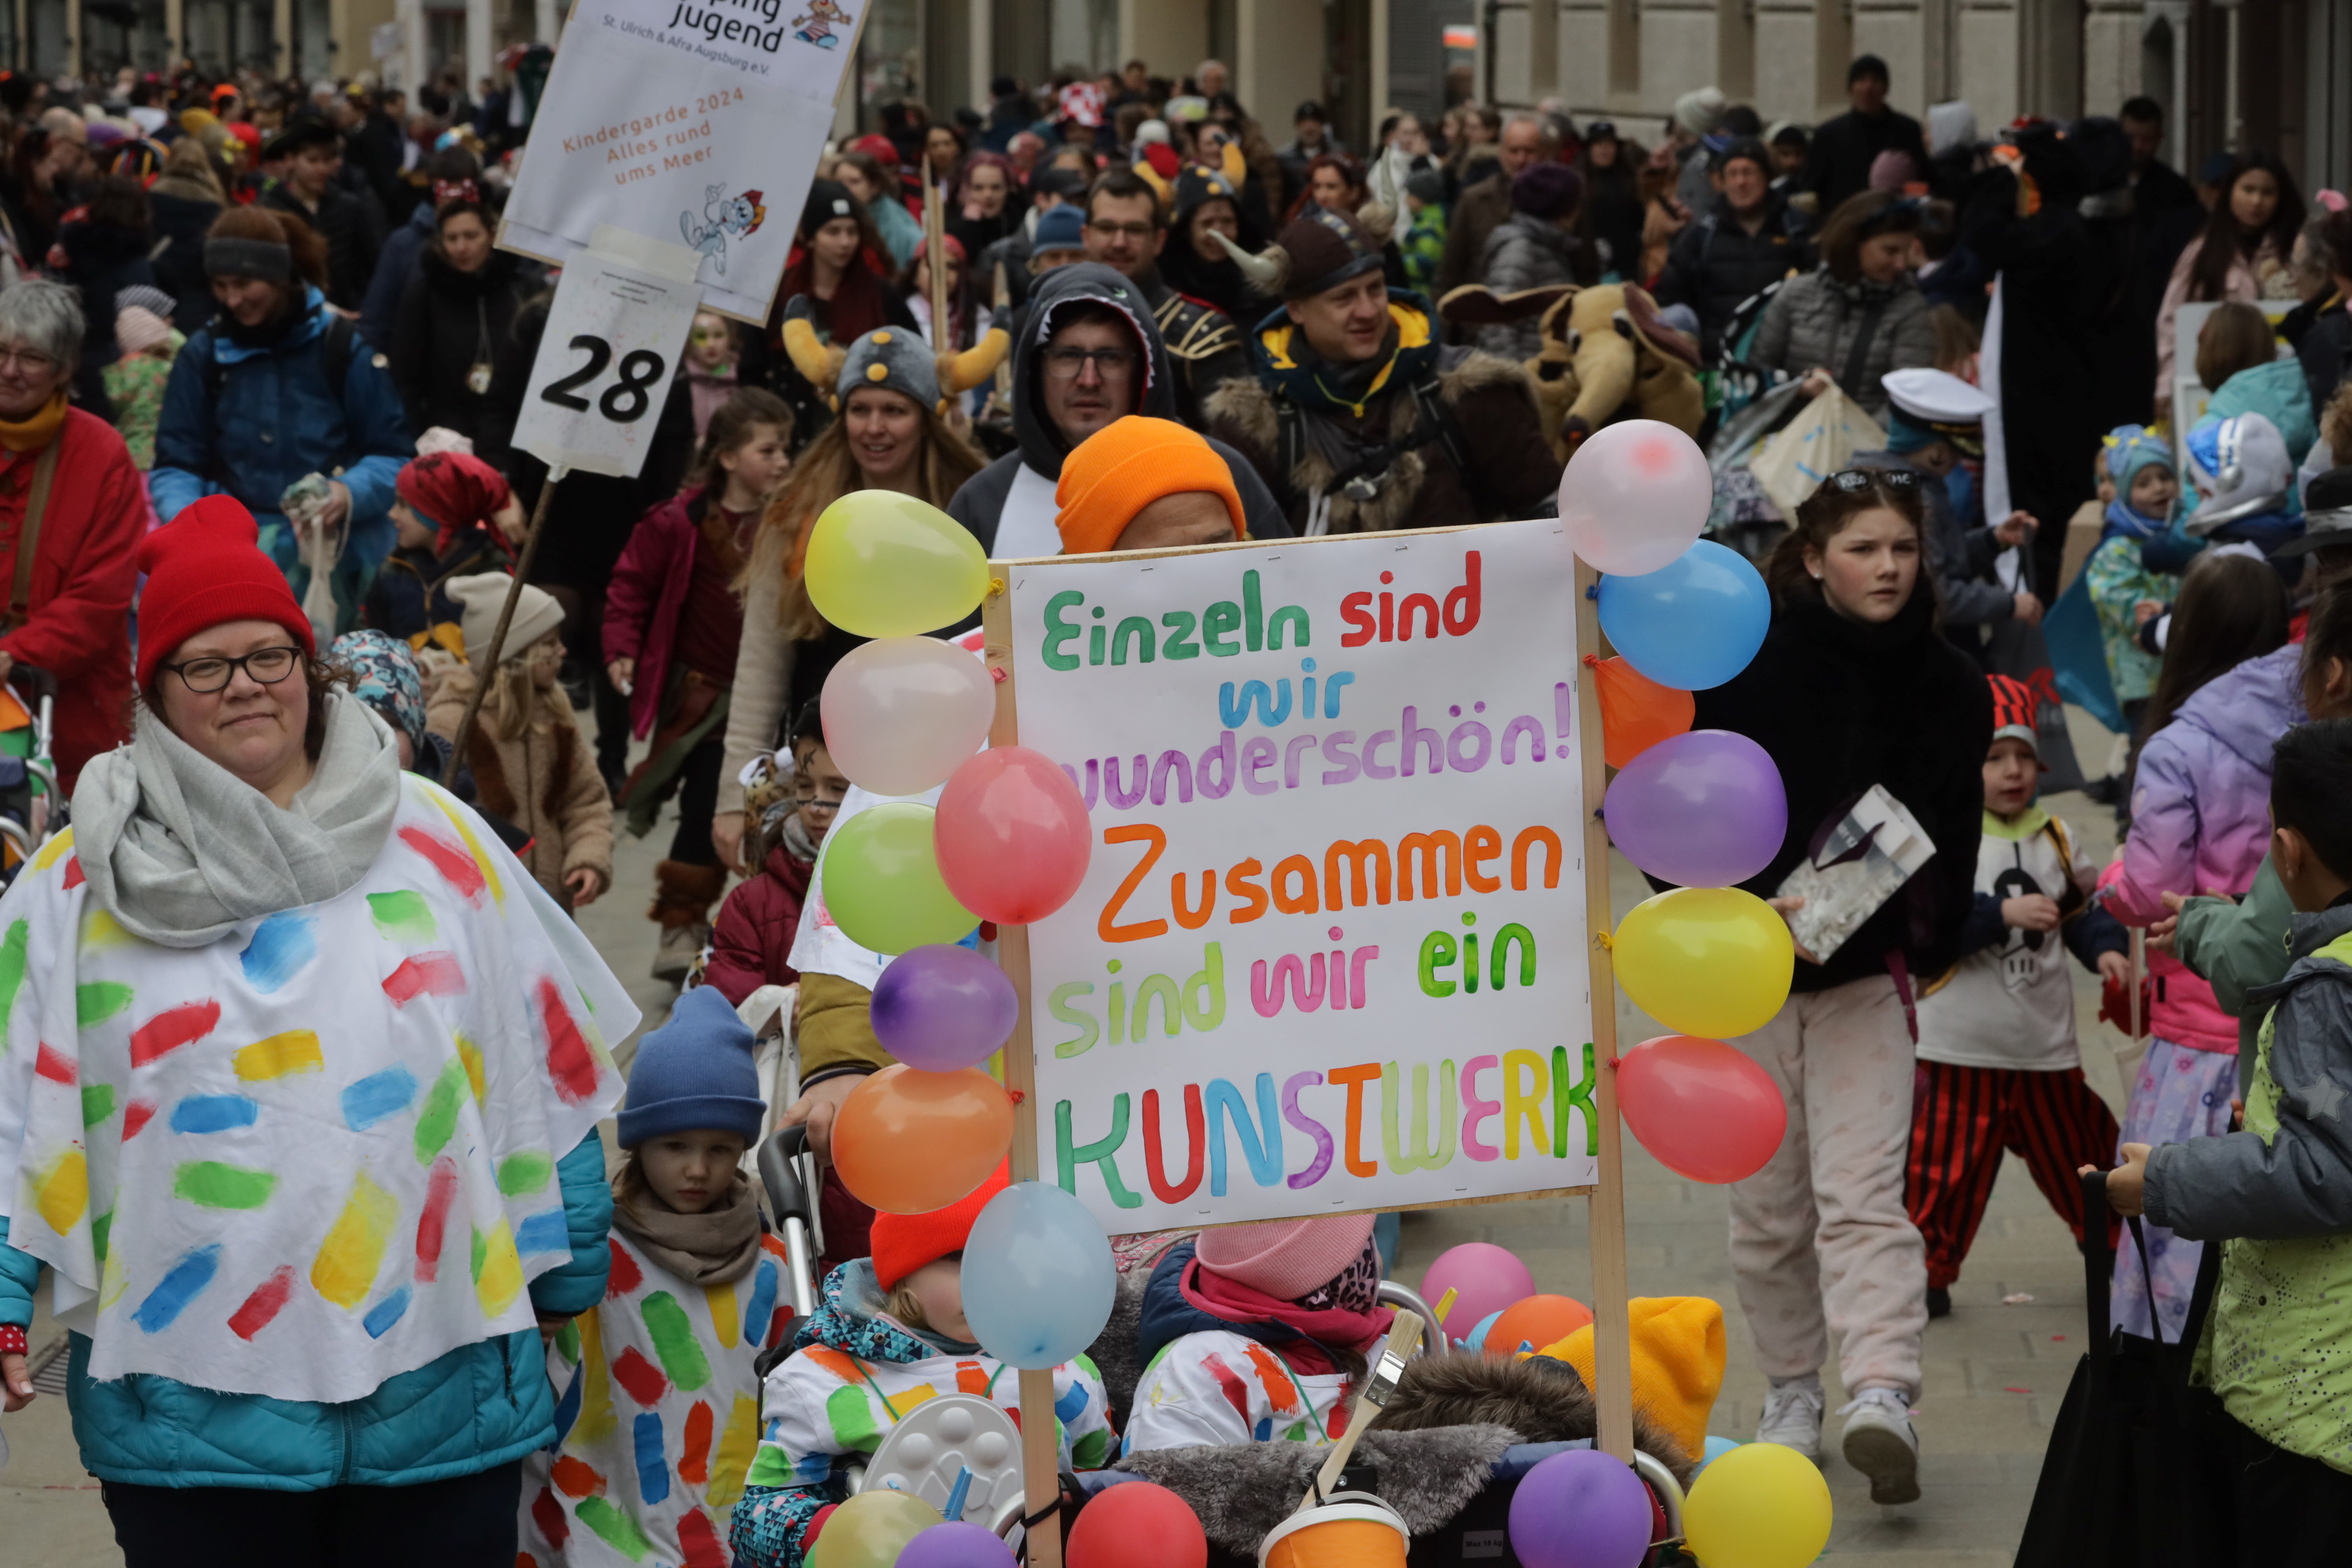 Ein bunter Gruppe an Menschen in Kostümen mit einem Schild in der Hand mit der Aufschrift "Einzeln sind wir wunderschön, zusammen sind wir ein Kunstwerk".